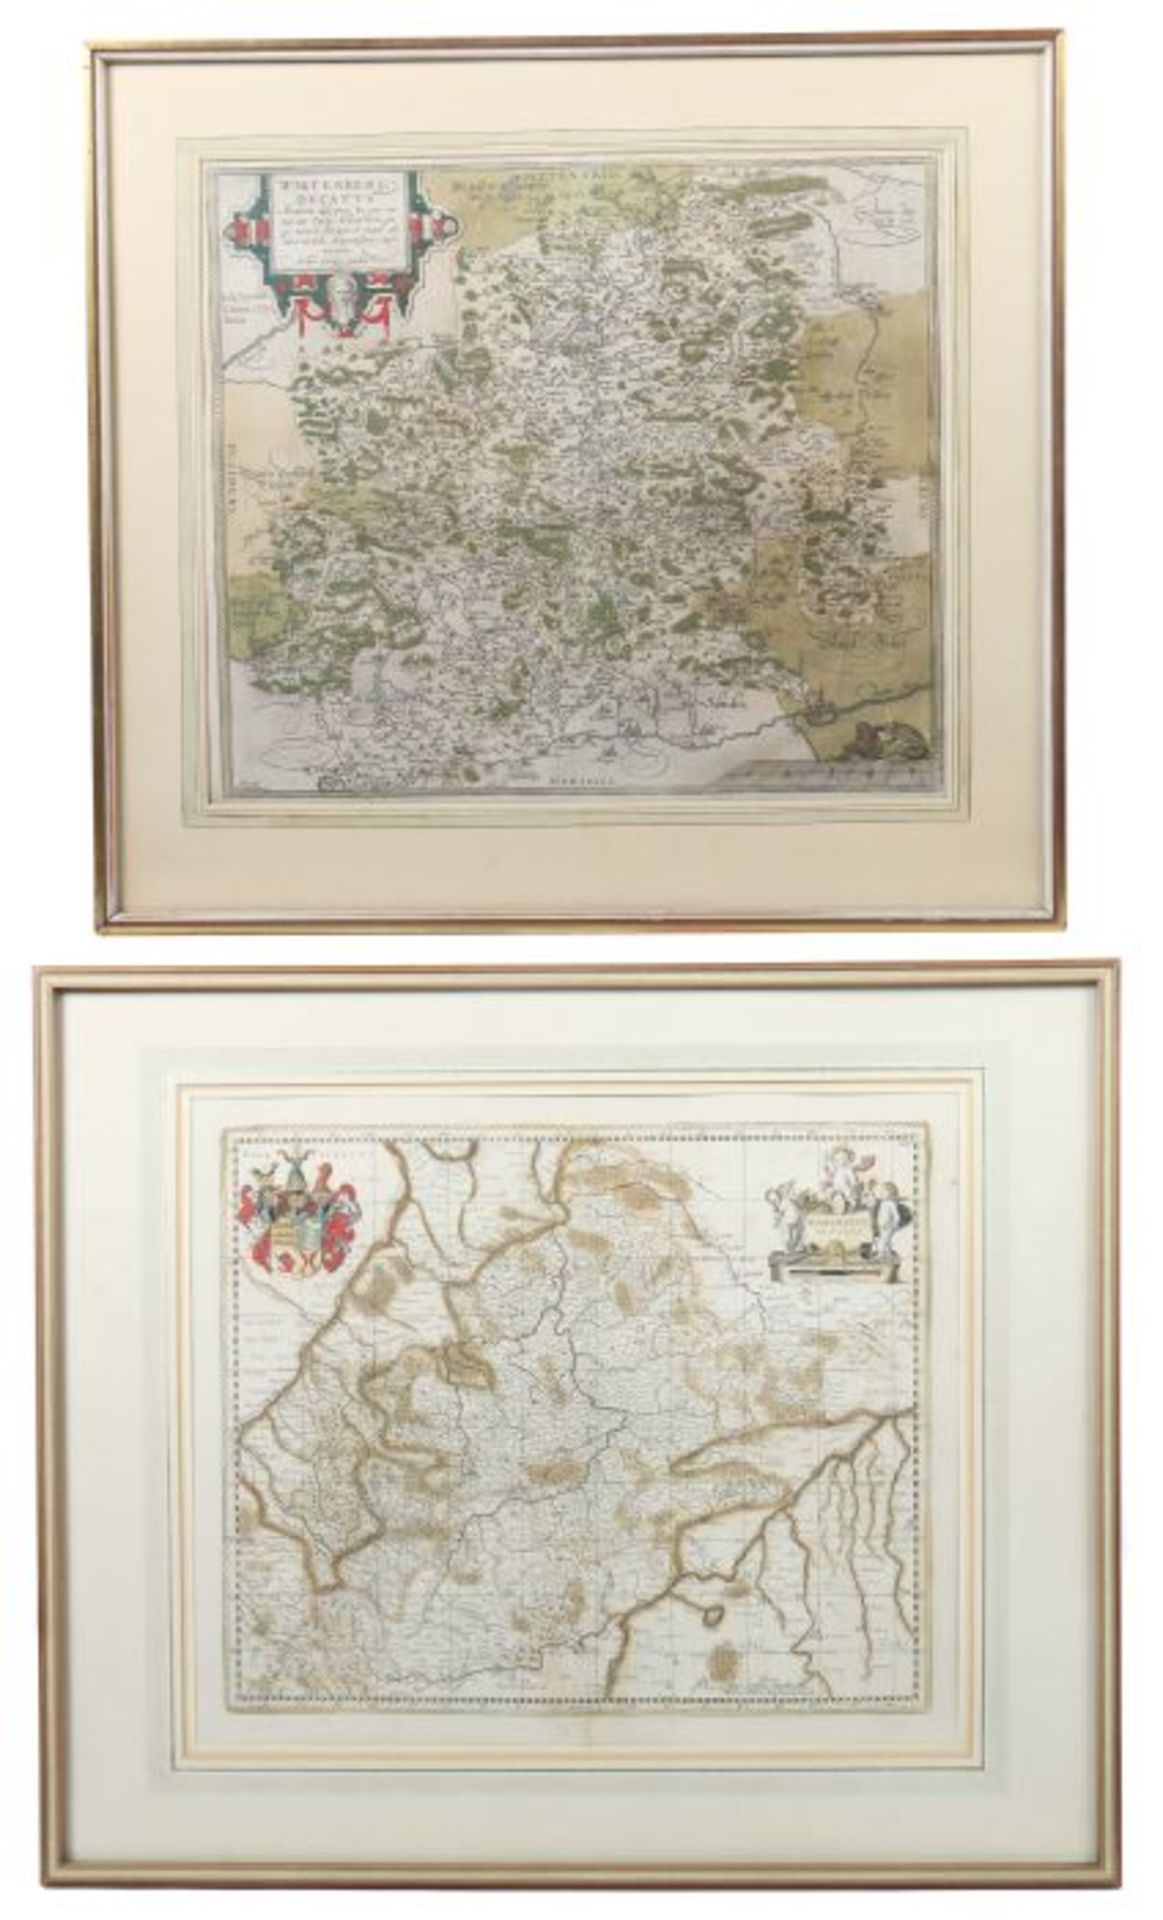 Konvolut Landkarten Württemberg1x Georg Gardner: "Wirtenberg Dvkatus", Ausgabe von Ortelius; 1x